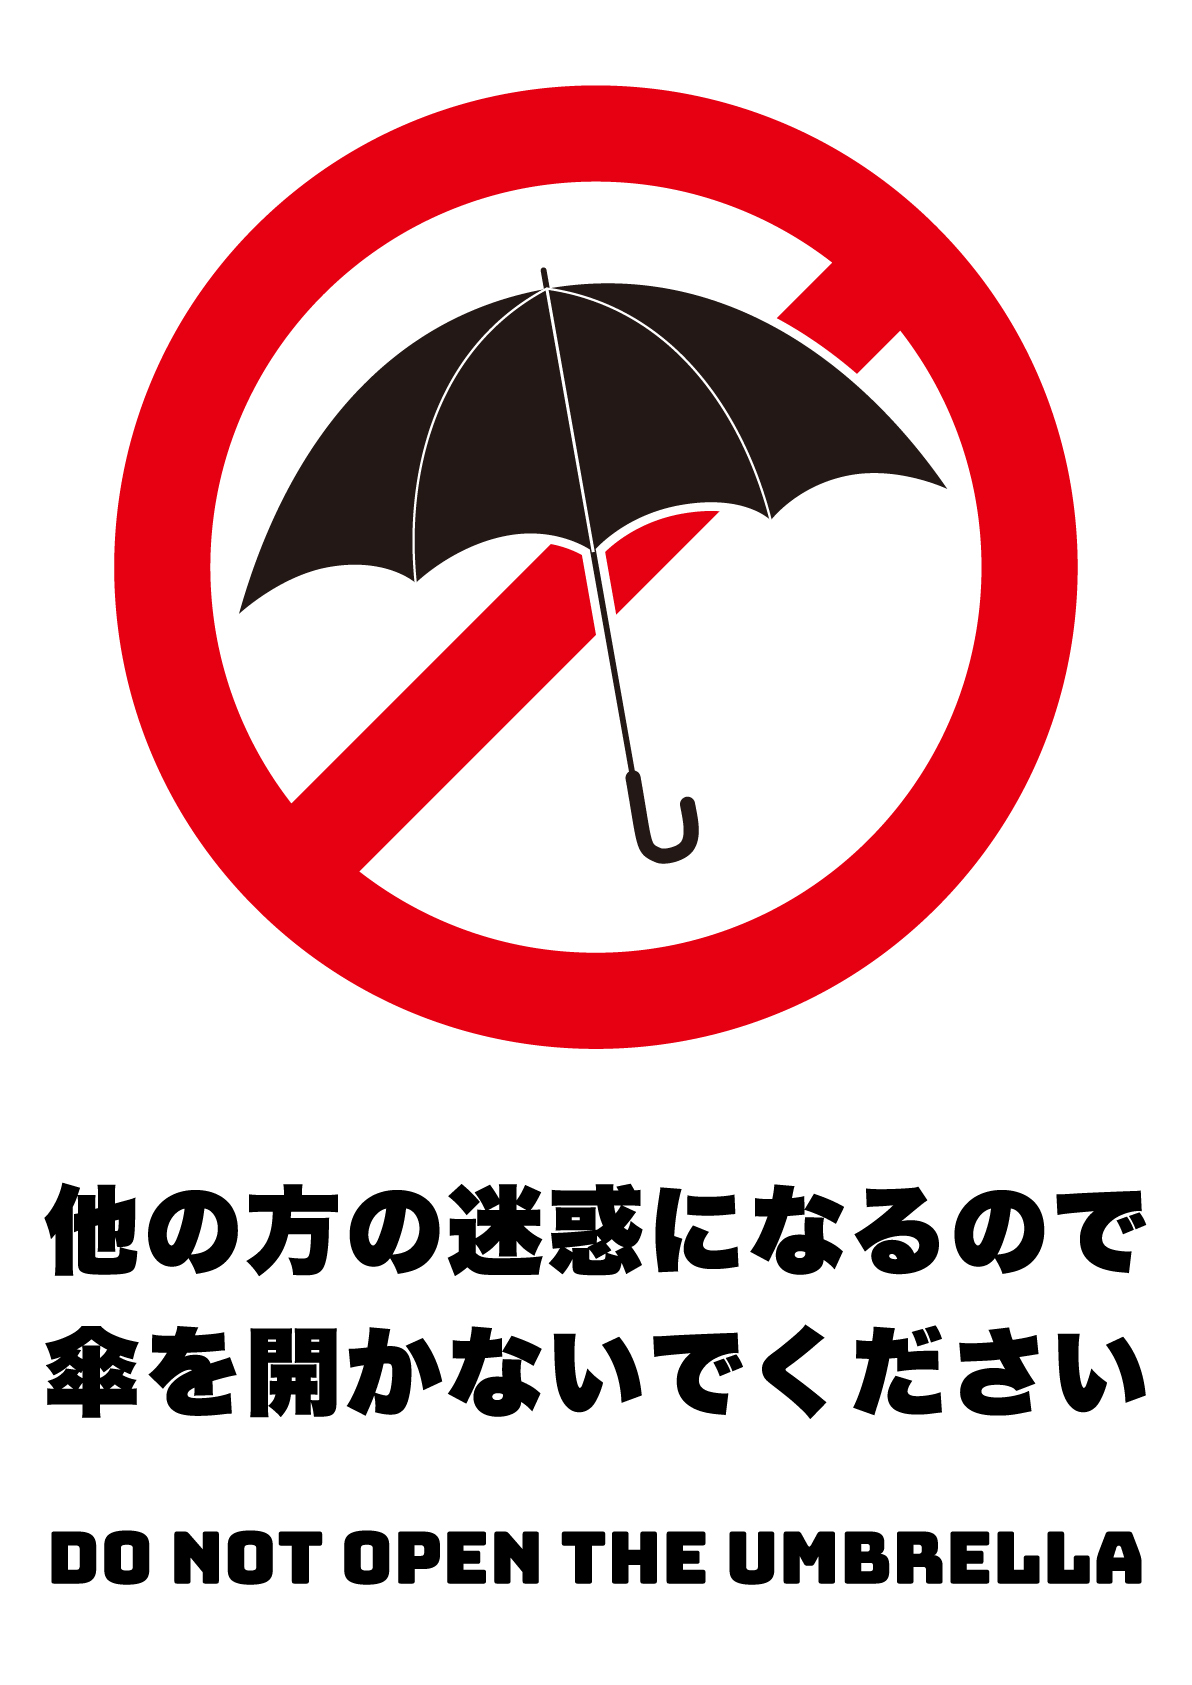 傘を開かないで（縦）の張り紙